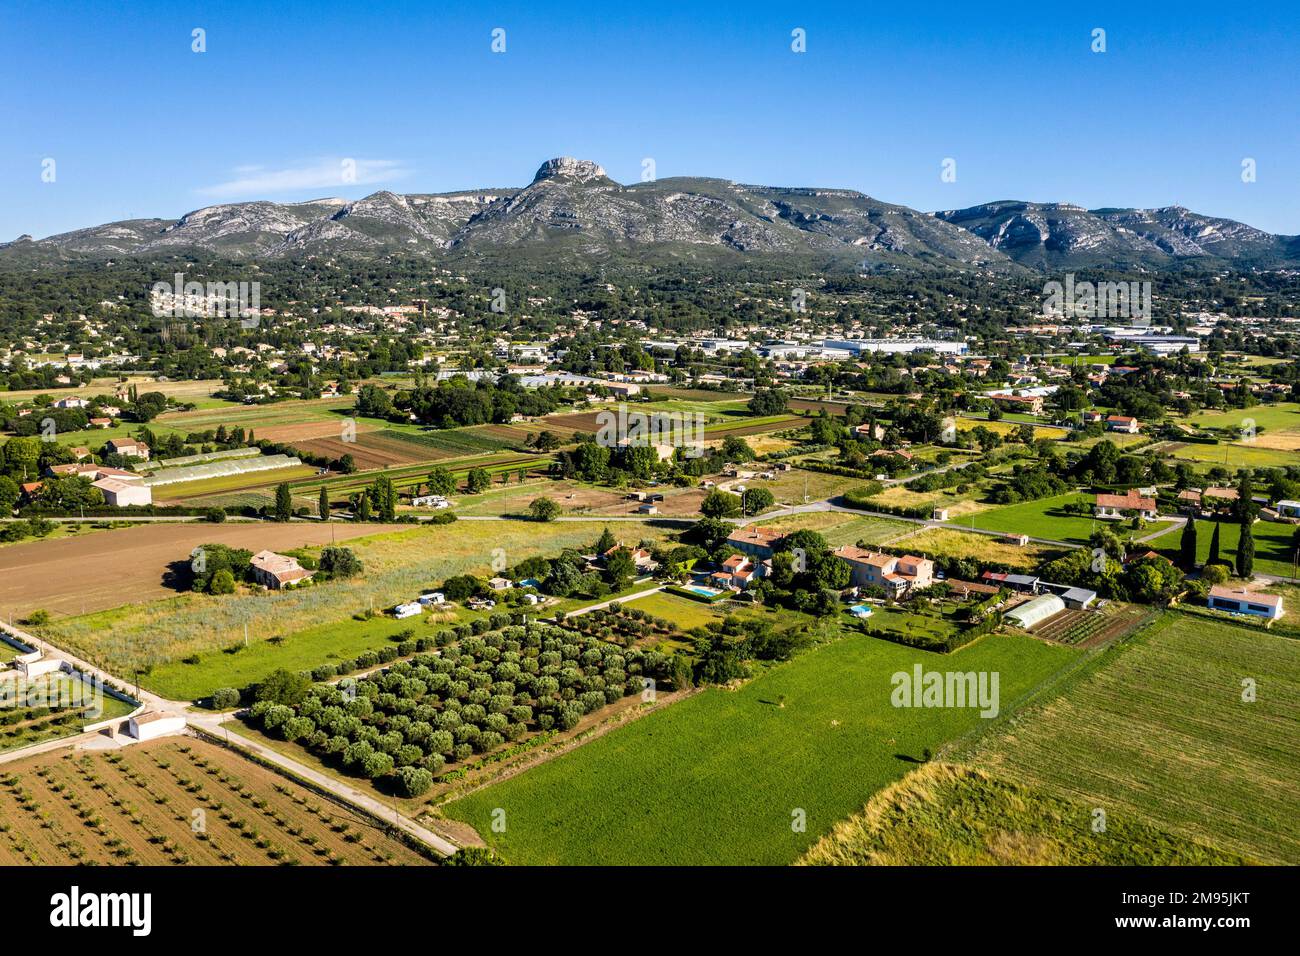 Aubagne (Südostfrankreich): Blick aus der Vogelperspektive auf ein landwirtschaftliches Gebiet am Stadtrand mit einem Industriegebiet und dem Garlaban-Massiv im di Stockfoto